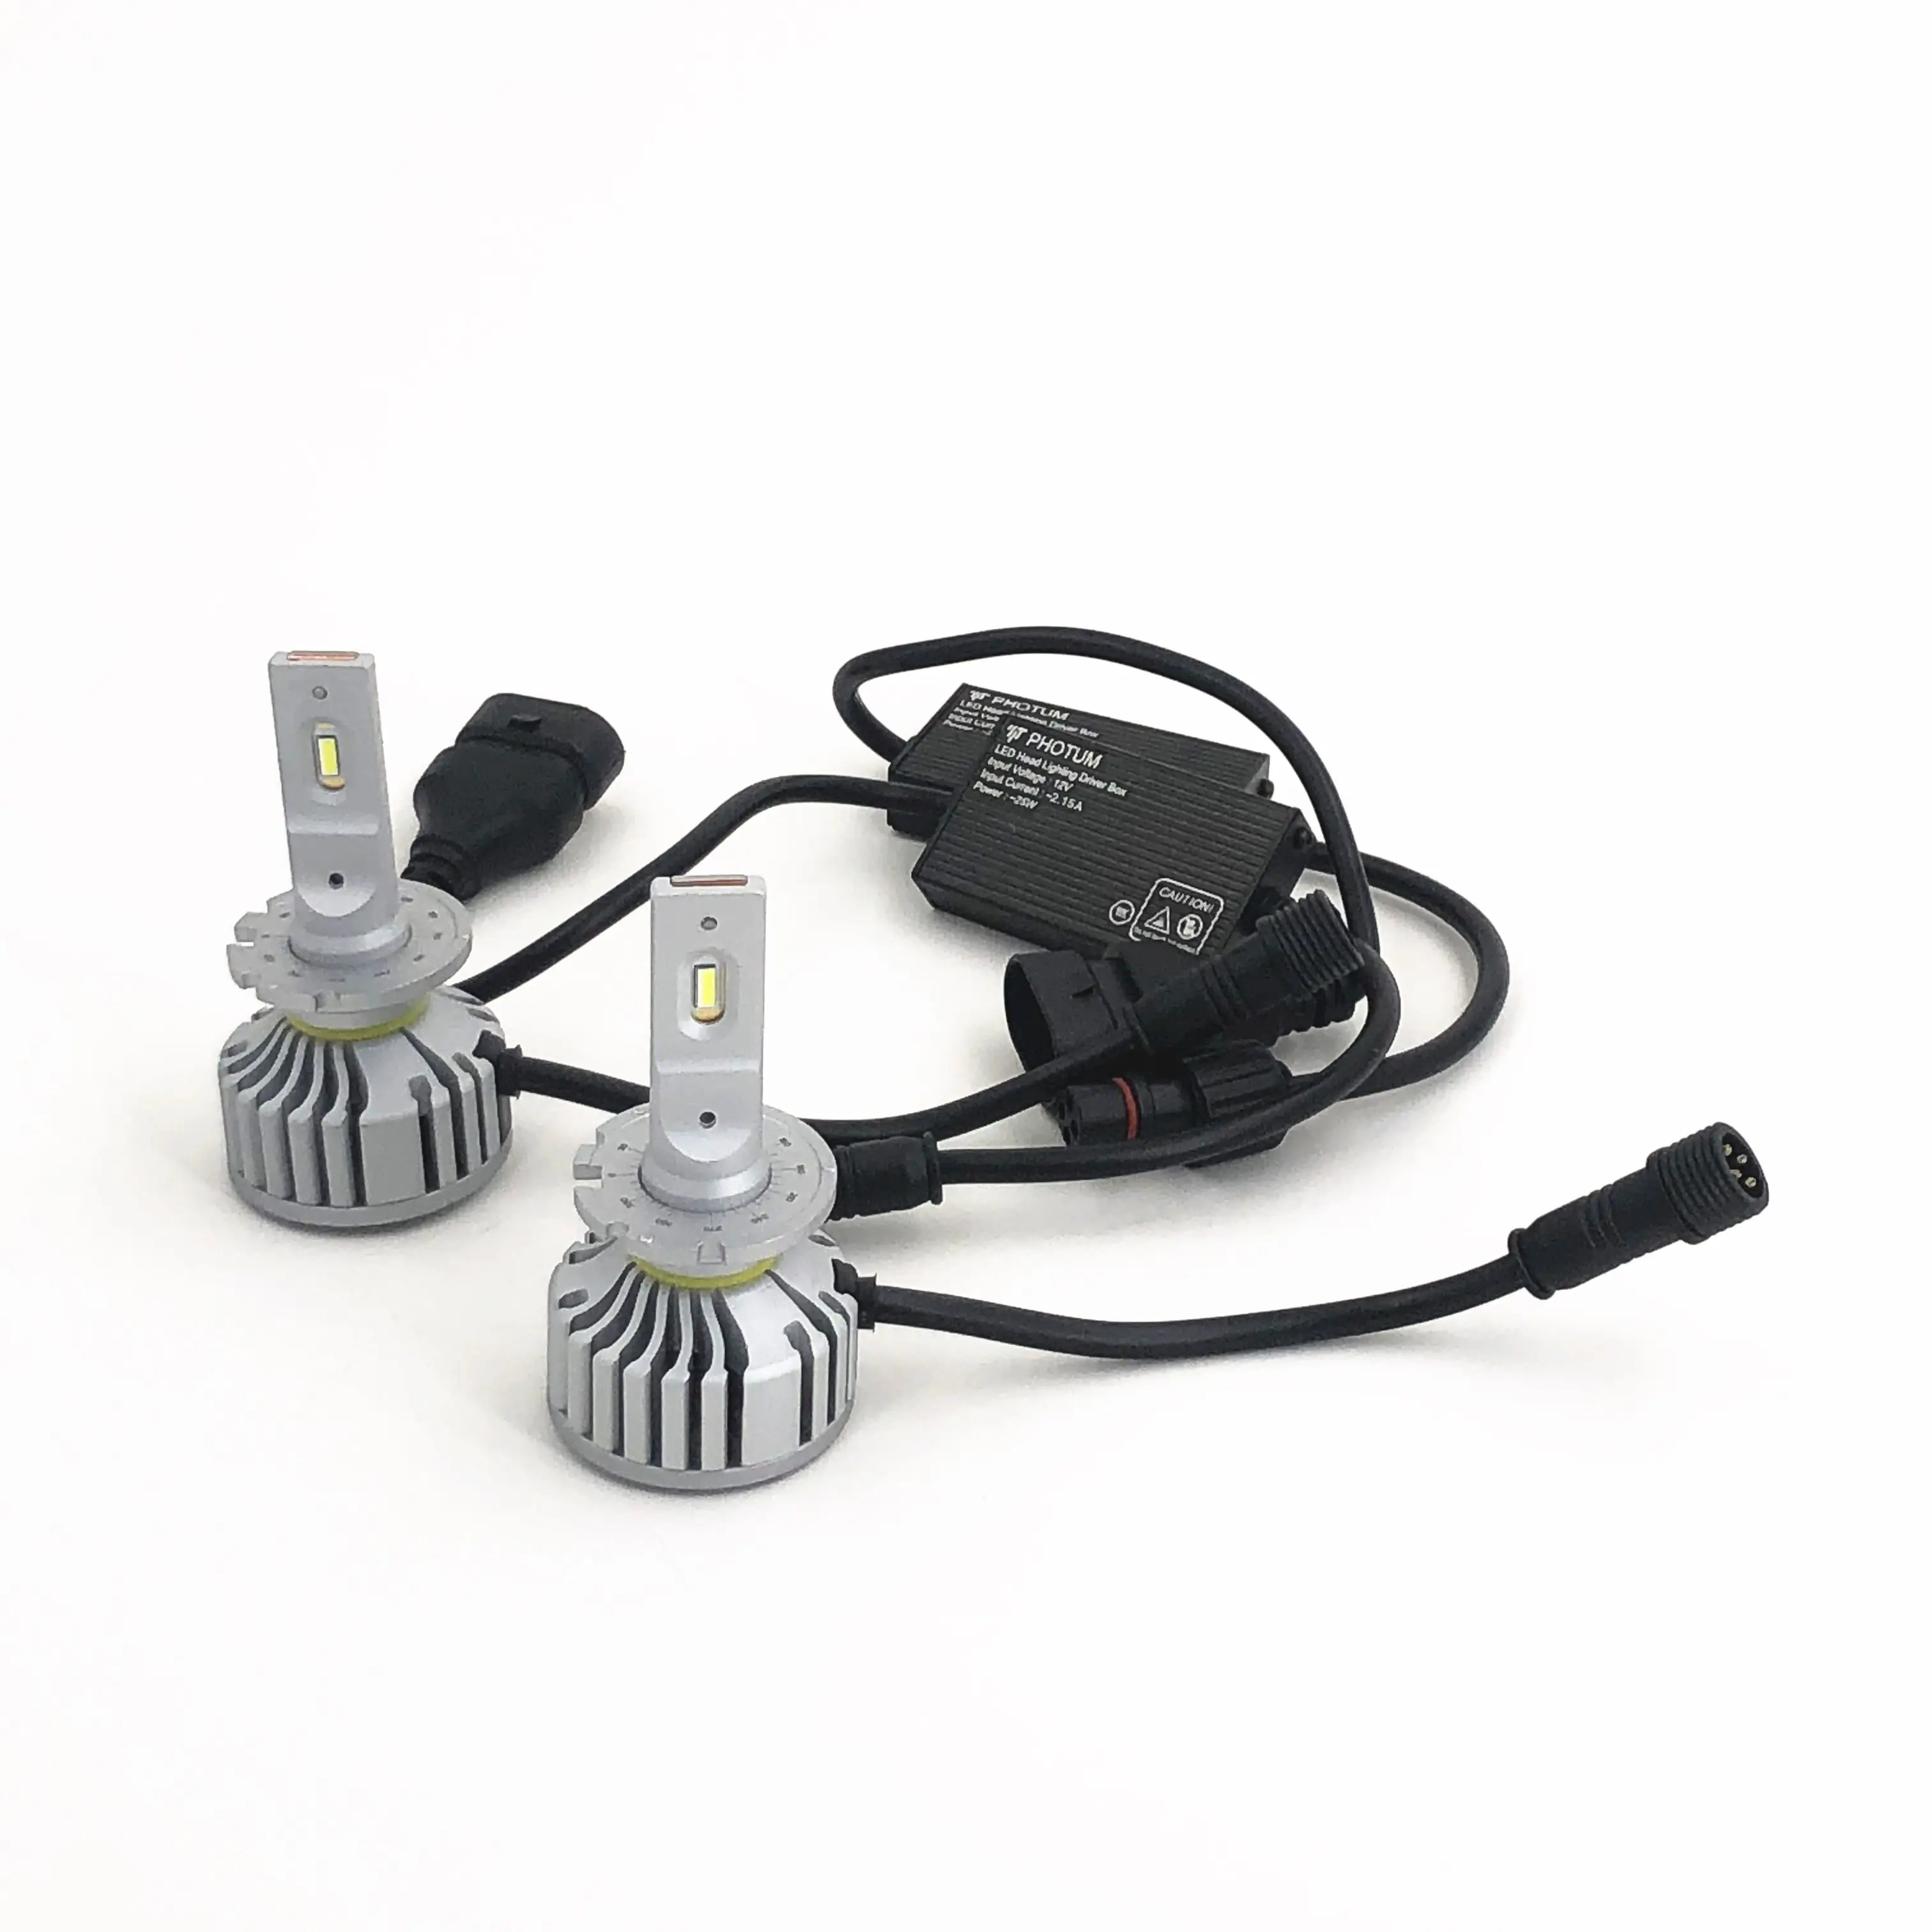 YEAKY/PHOTUM araba far ile RoHS CE e-mark nokta belgelendirme A6 serisi D2H LED far lambaları otomatik aydınlatma